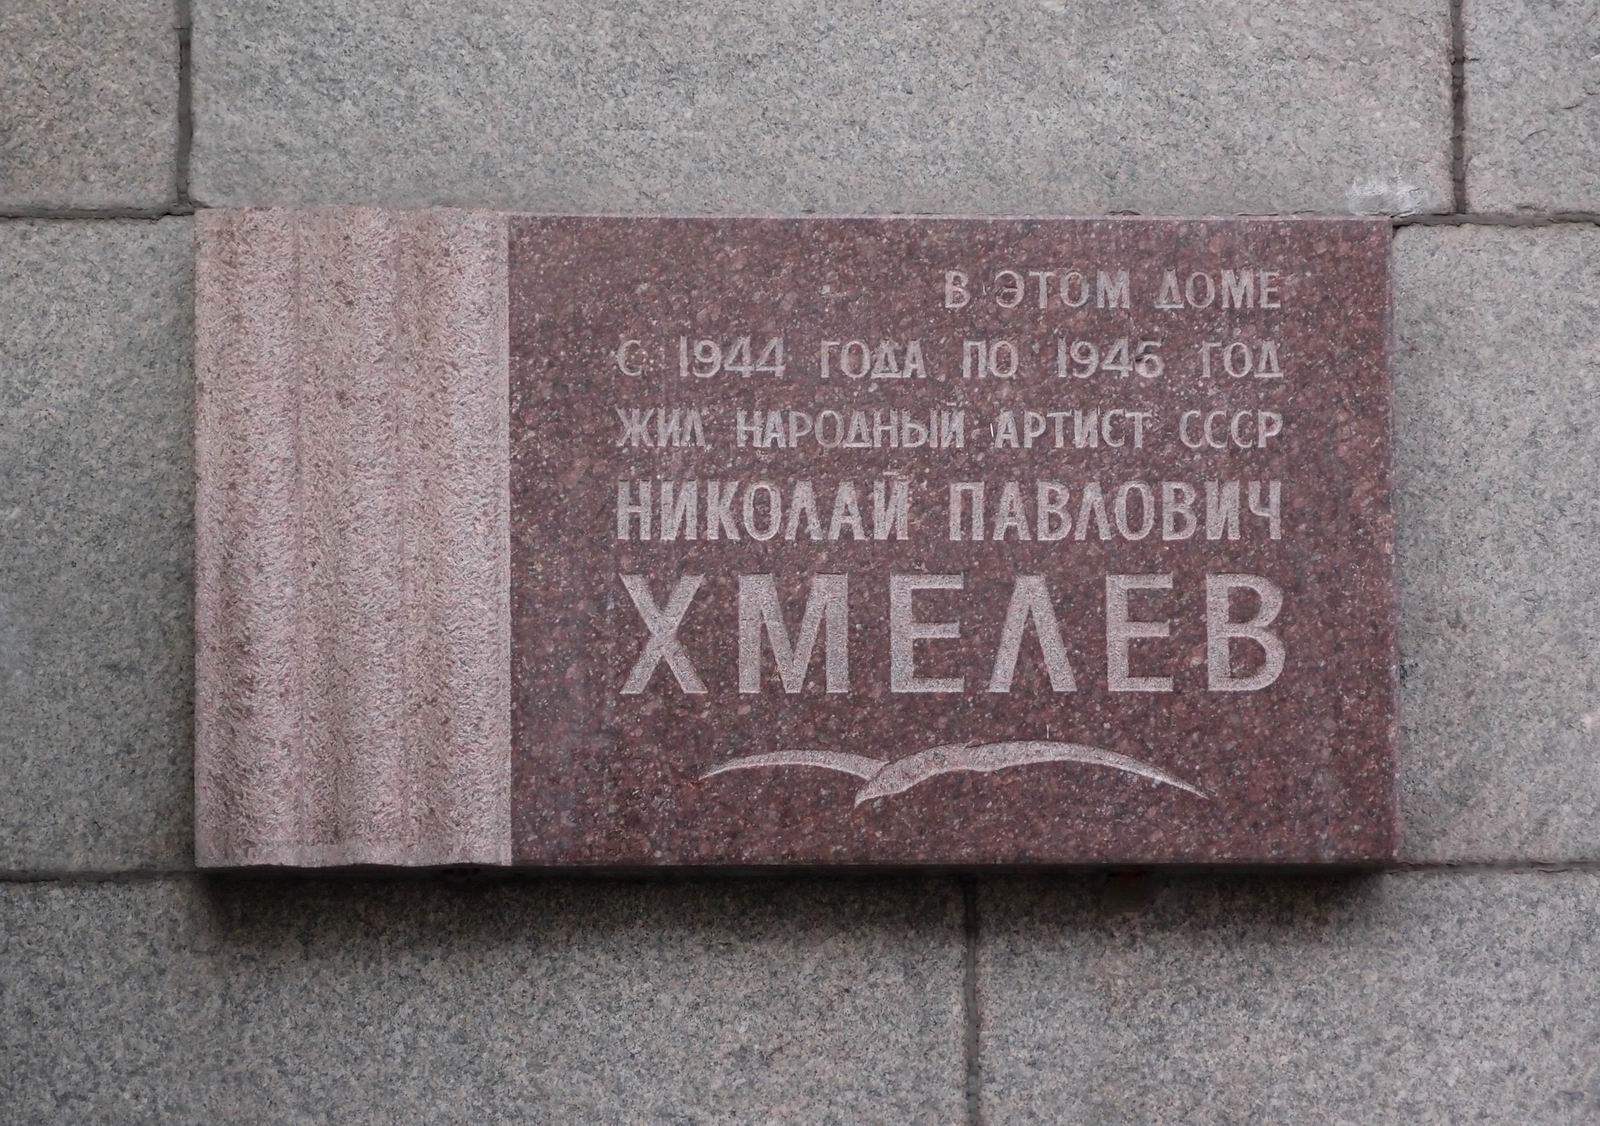 Мемориальная доска Хмелёву Н.П. (1901–1945), арх. А.Н.Щепетильников, на Тверской улице, дом 8, открыта 28.3.1979.